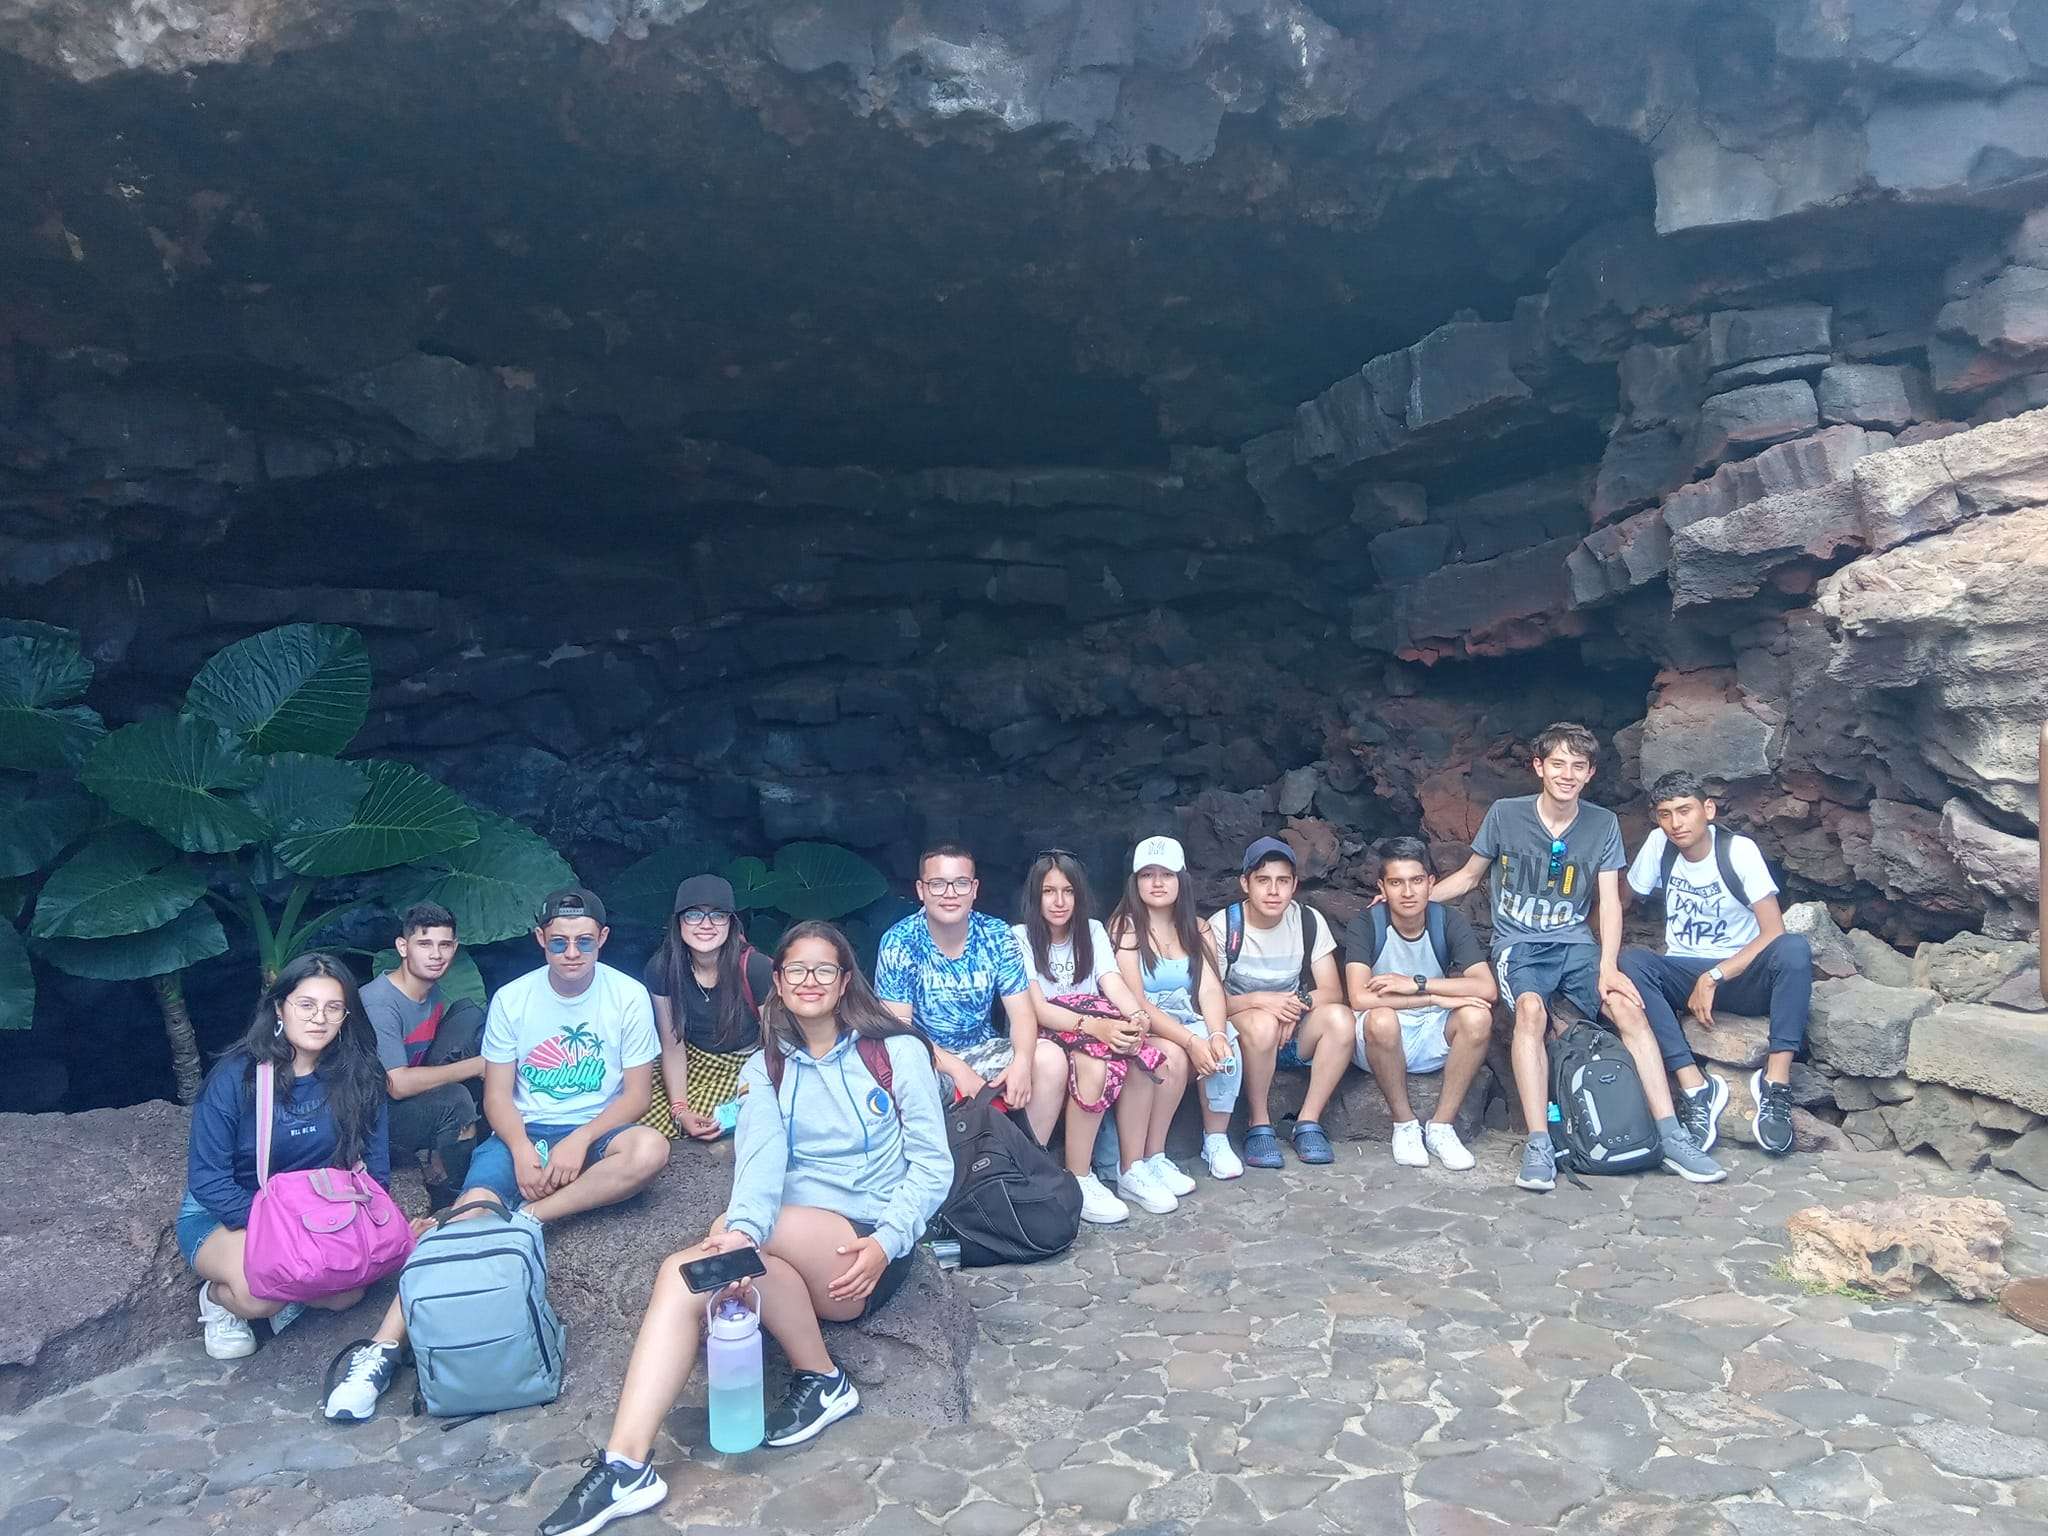 EXCURSIÓN A MARTE DESDE LA CIUDAD DE LA LUNA Cueva de los verdes – Punta Mujeres – Arrecife Lanzarote Islas Canarias España